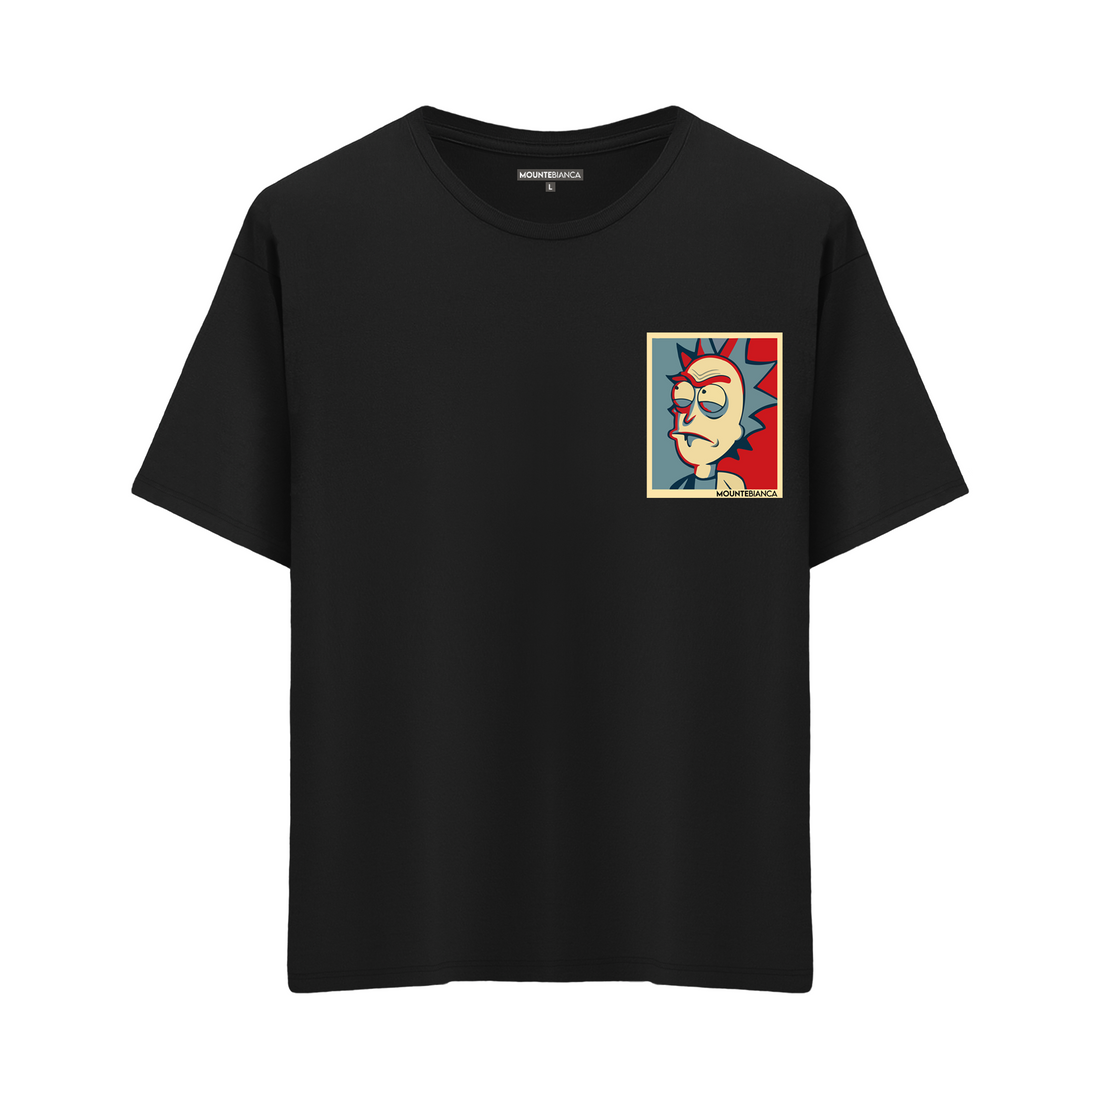 Rick Hero - Oversize T-shirt